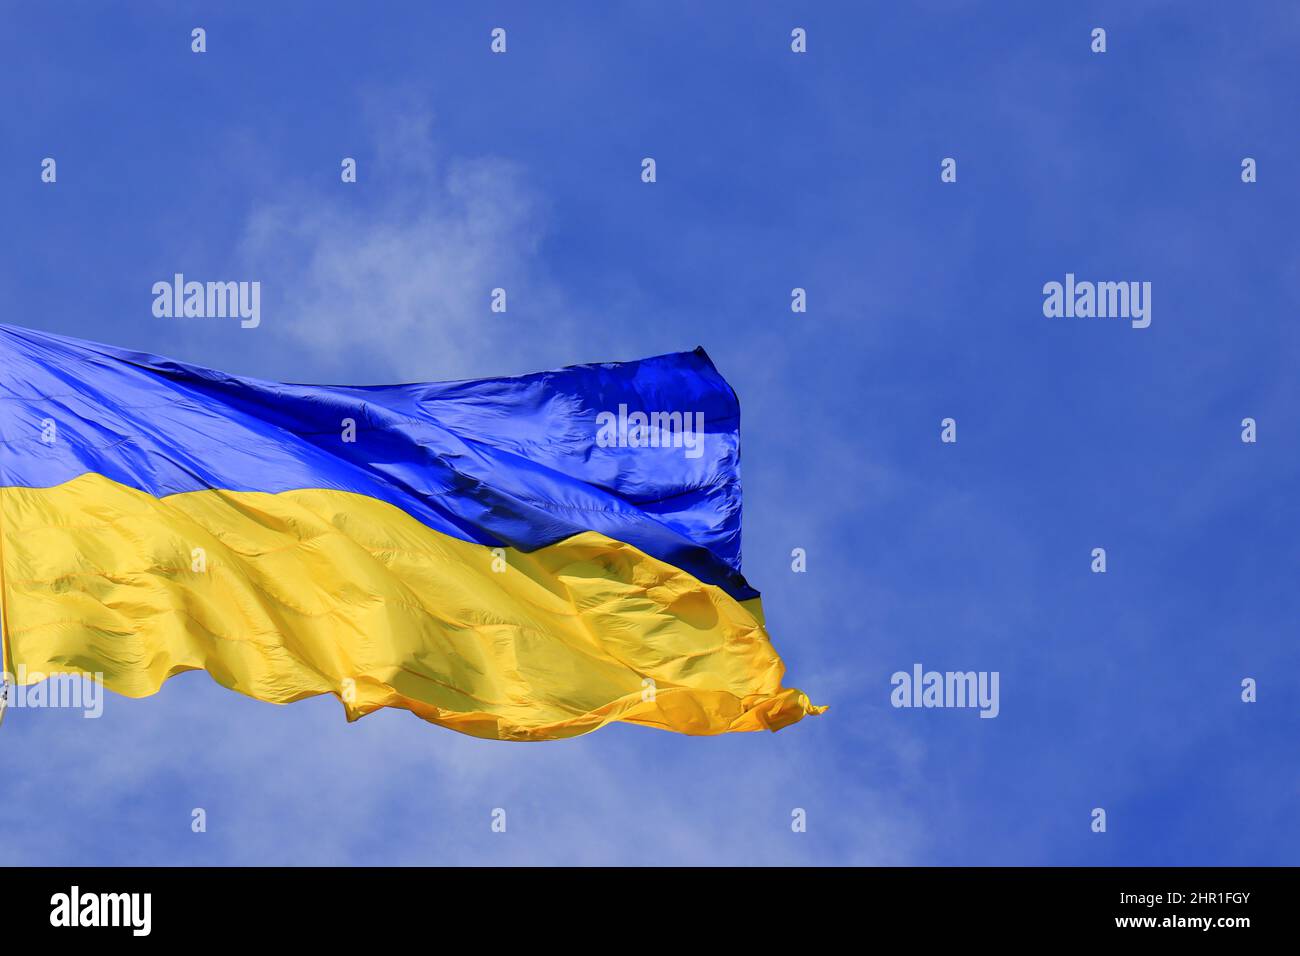 La bandera de Ucrania revoloteaba en el cielo azul. Gran bandera nacional ucraniana amarilla azul, ciudad de Kiev Ucrania Foto de stock